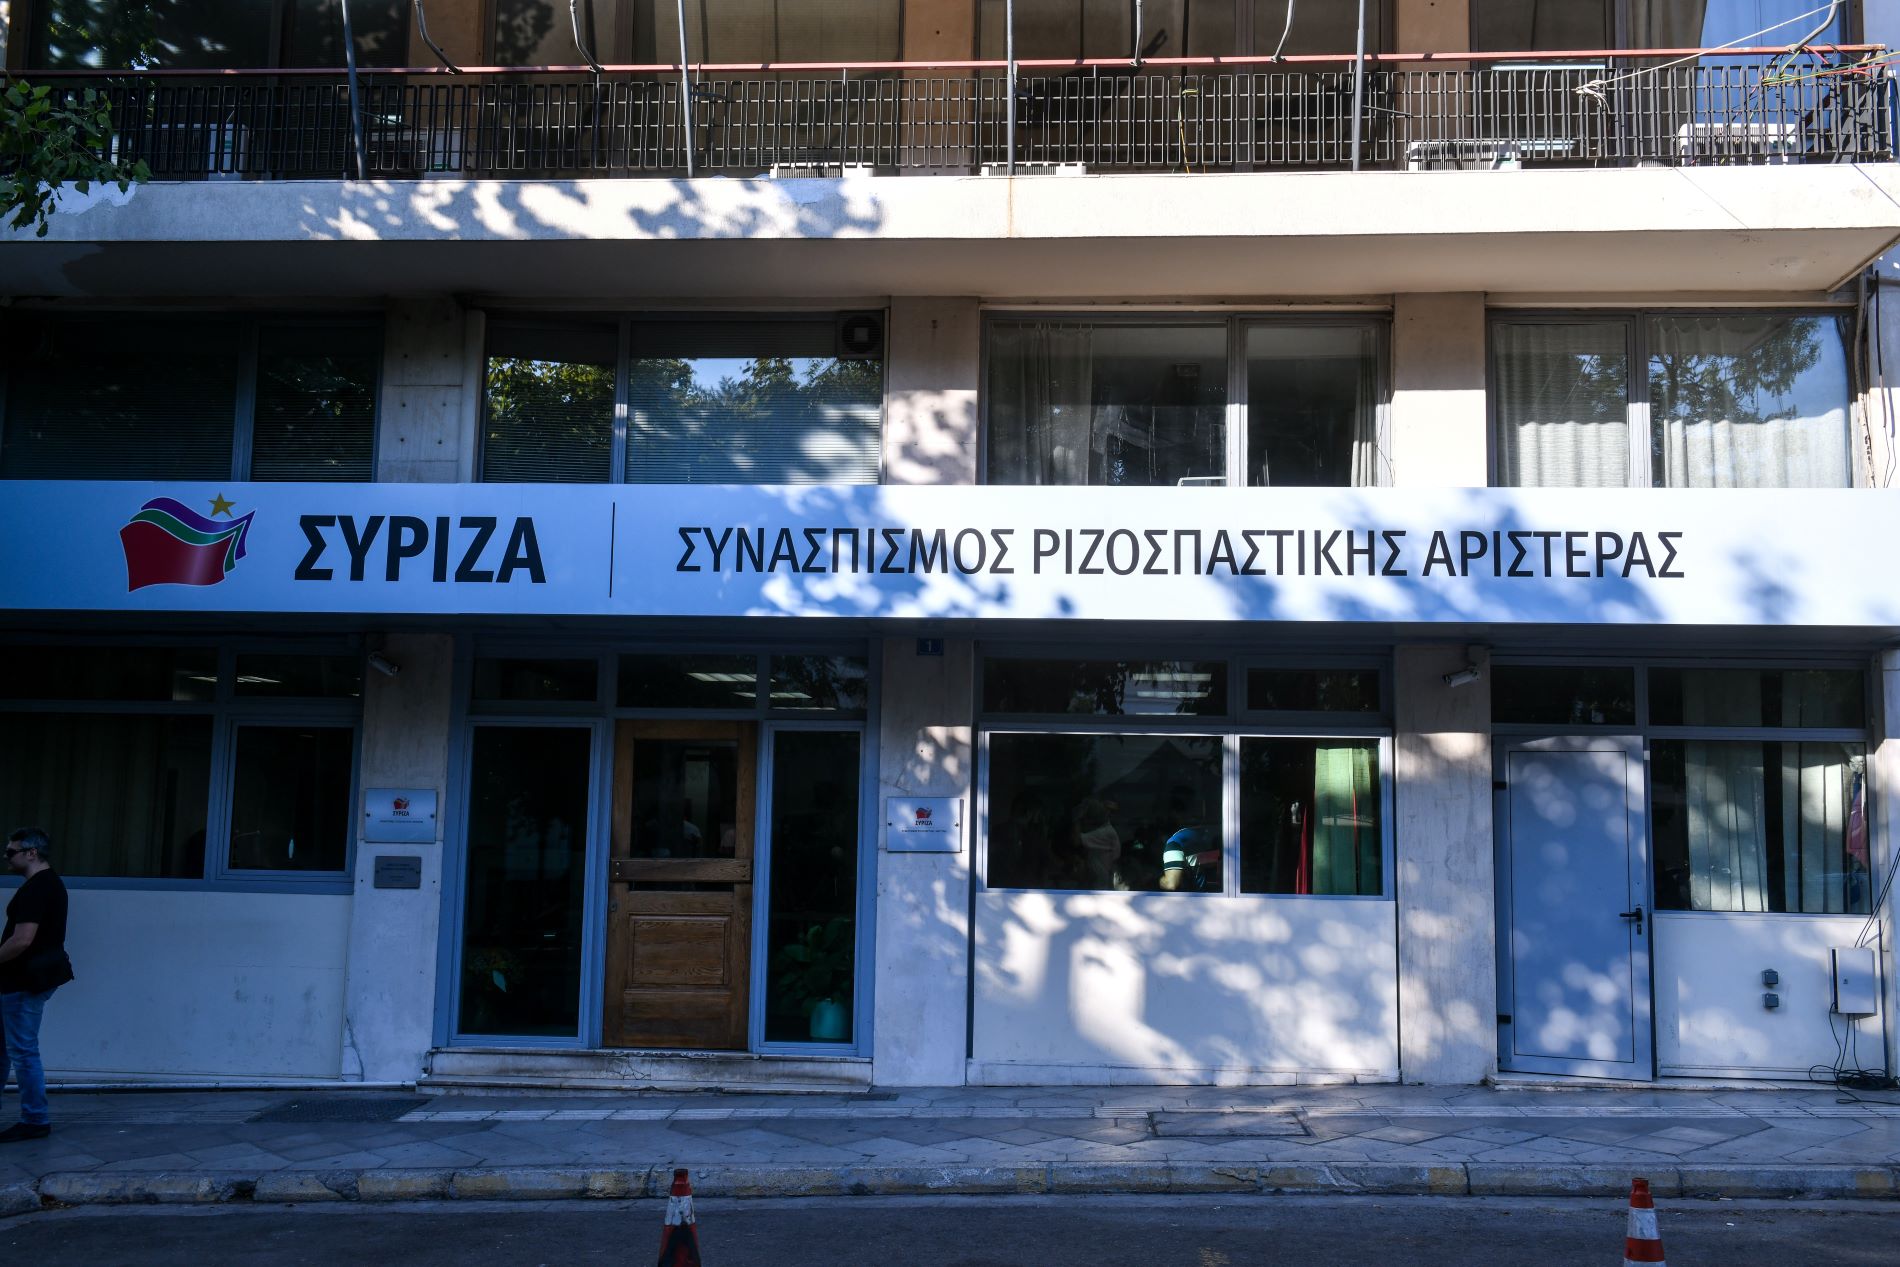 Τα γραφεία του ΣΥΡΙΖΑ στην Κουμουνδούρου ©Eurokinissi